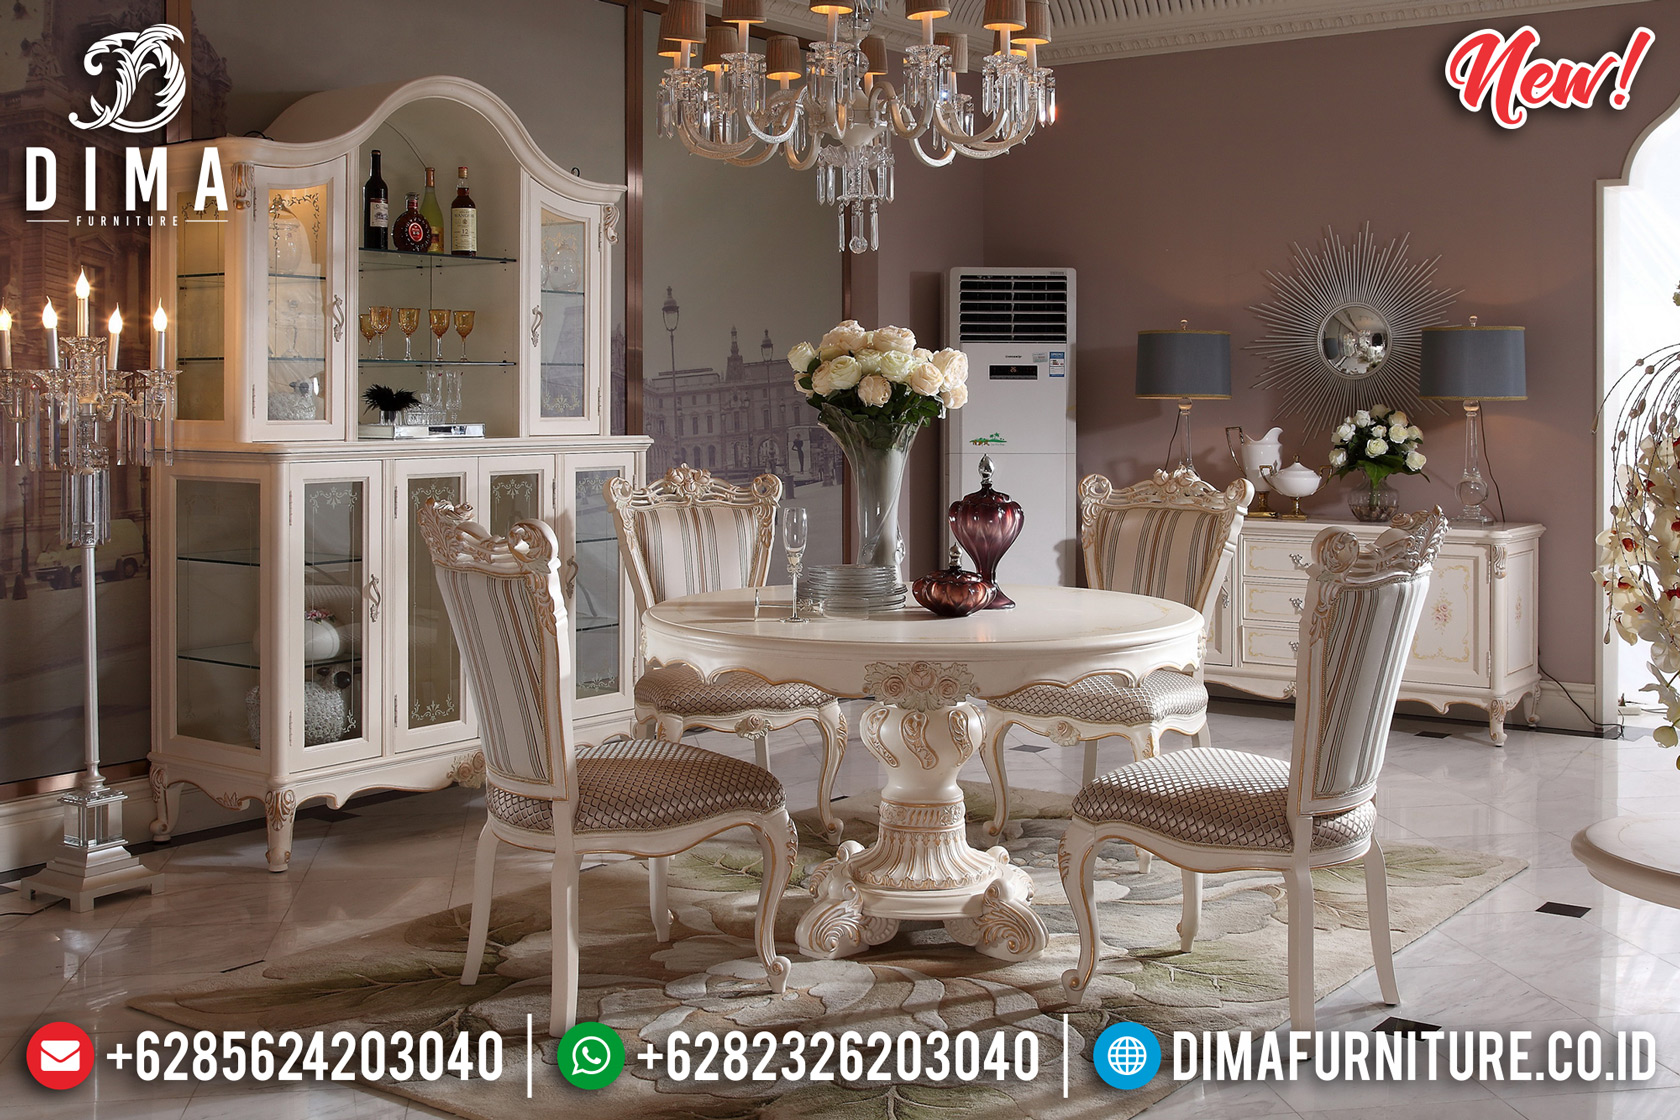 Termewah!!! Model Meja Makan Mewah Bundar Luxury Carving Best Collection Dima Furniture Jepara DF-1460